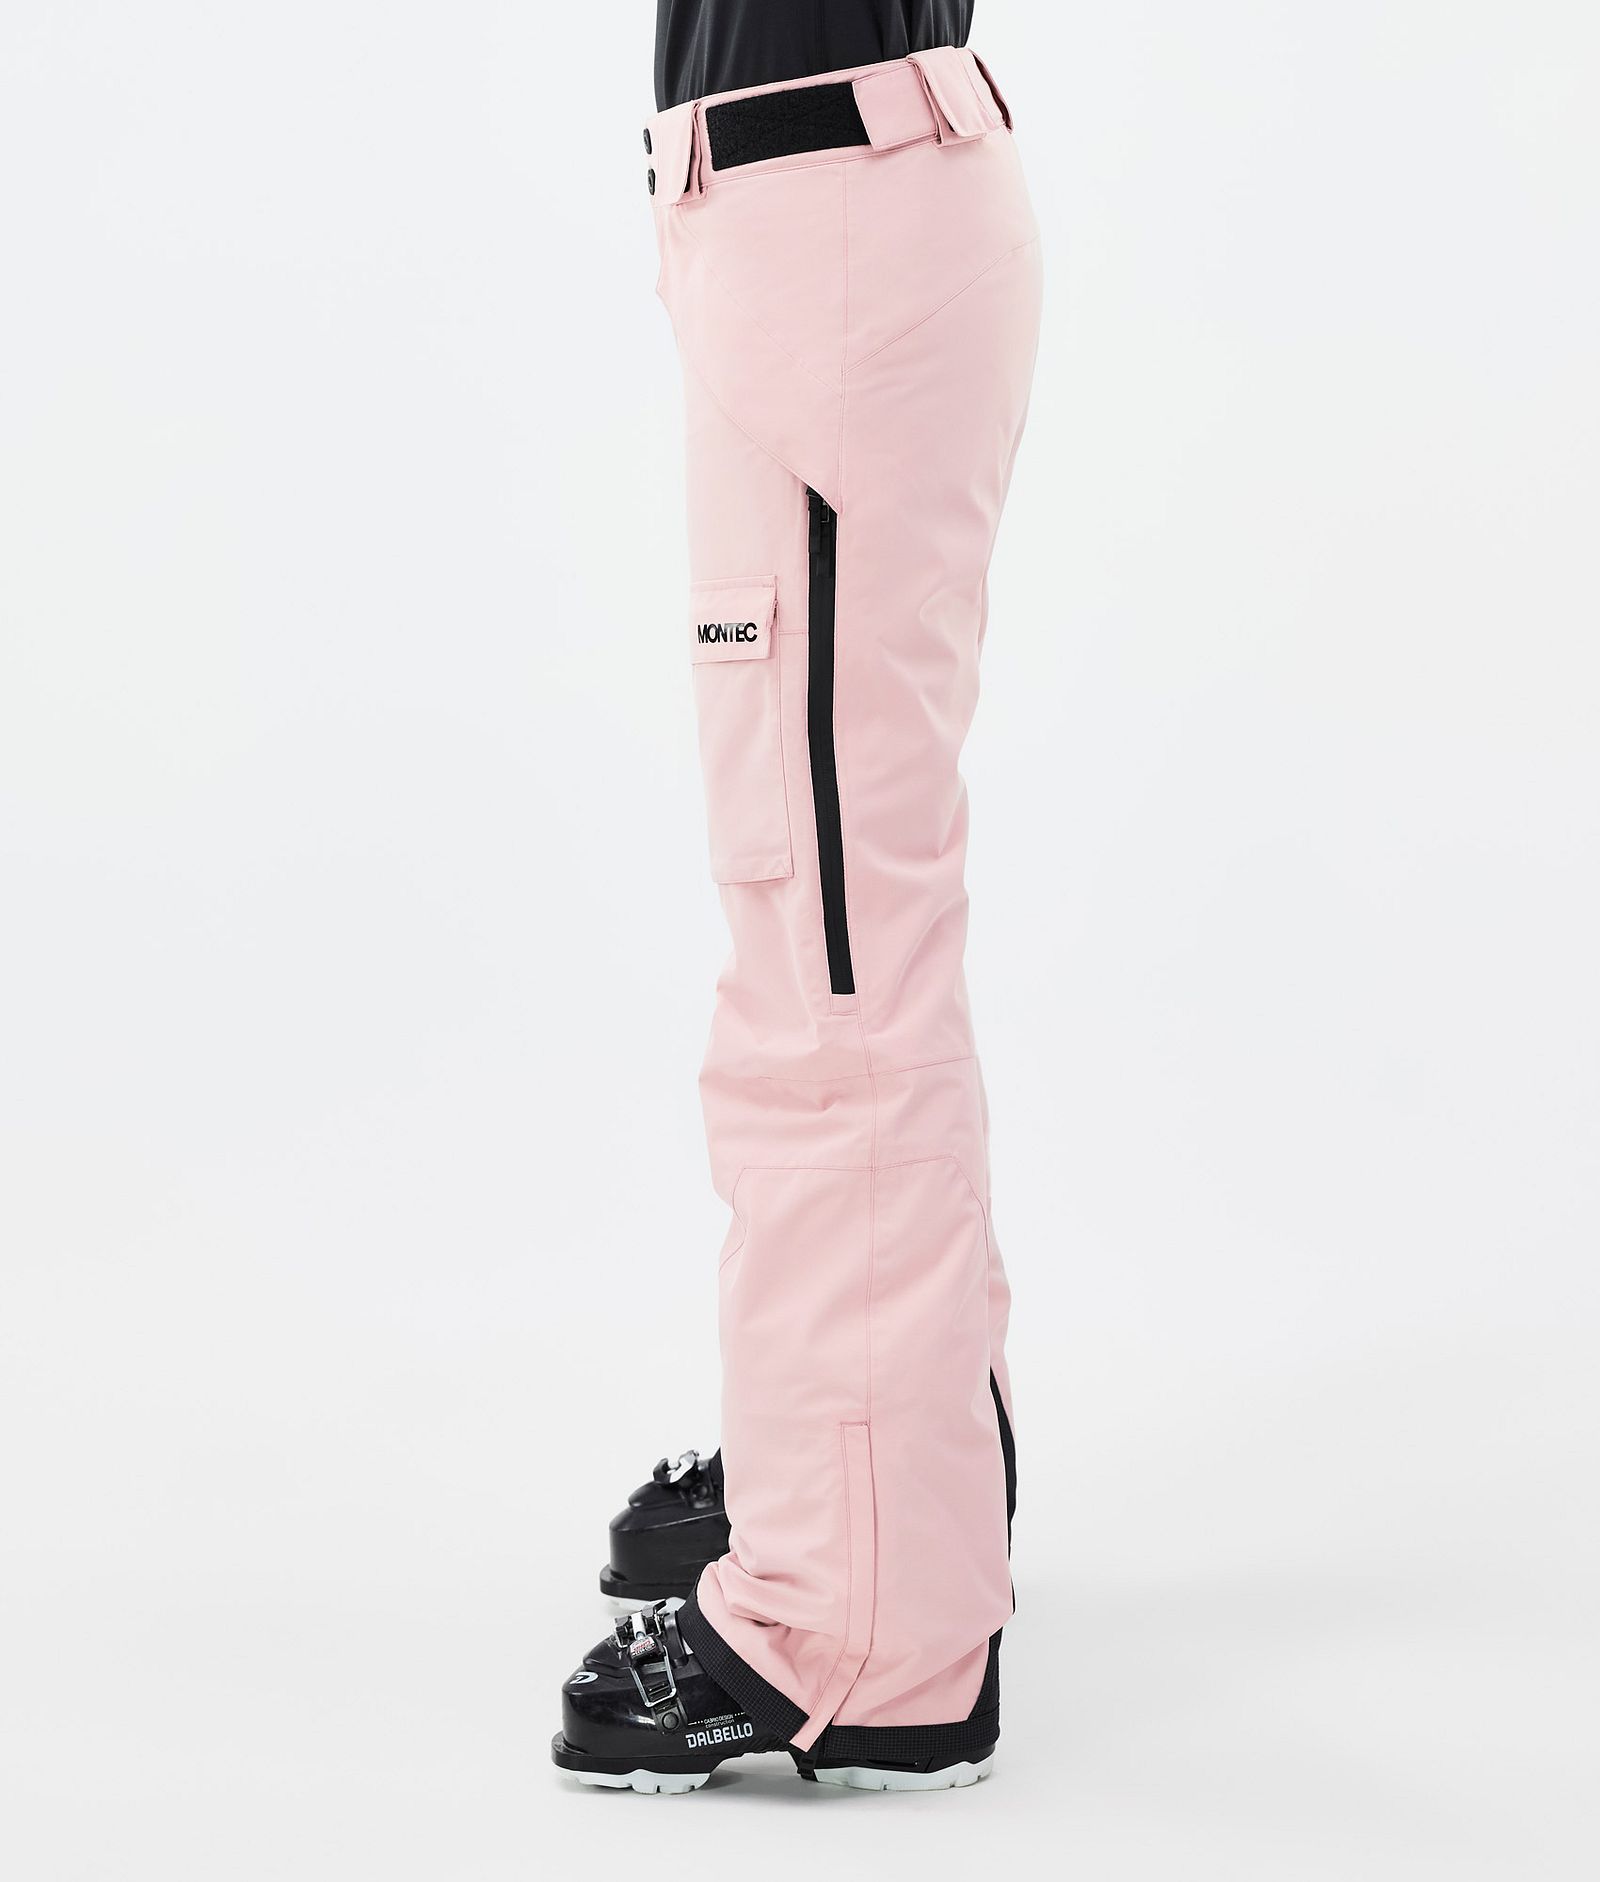 Montec Kirin W Ski Pants Women Soft Pink, Image 3 of 6